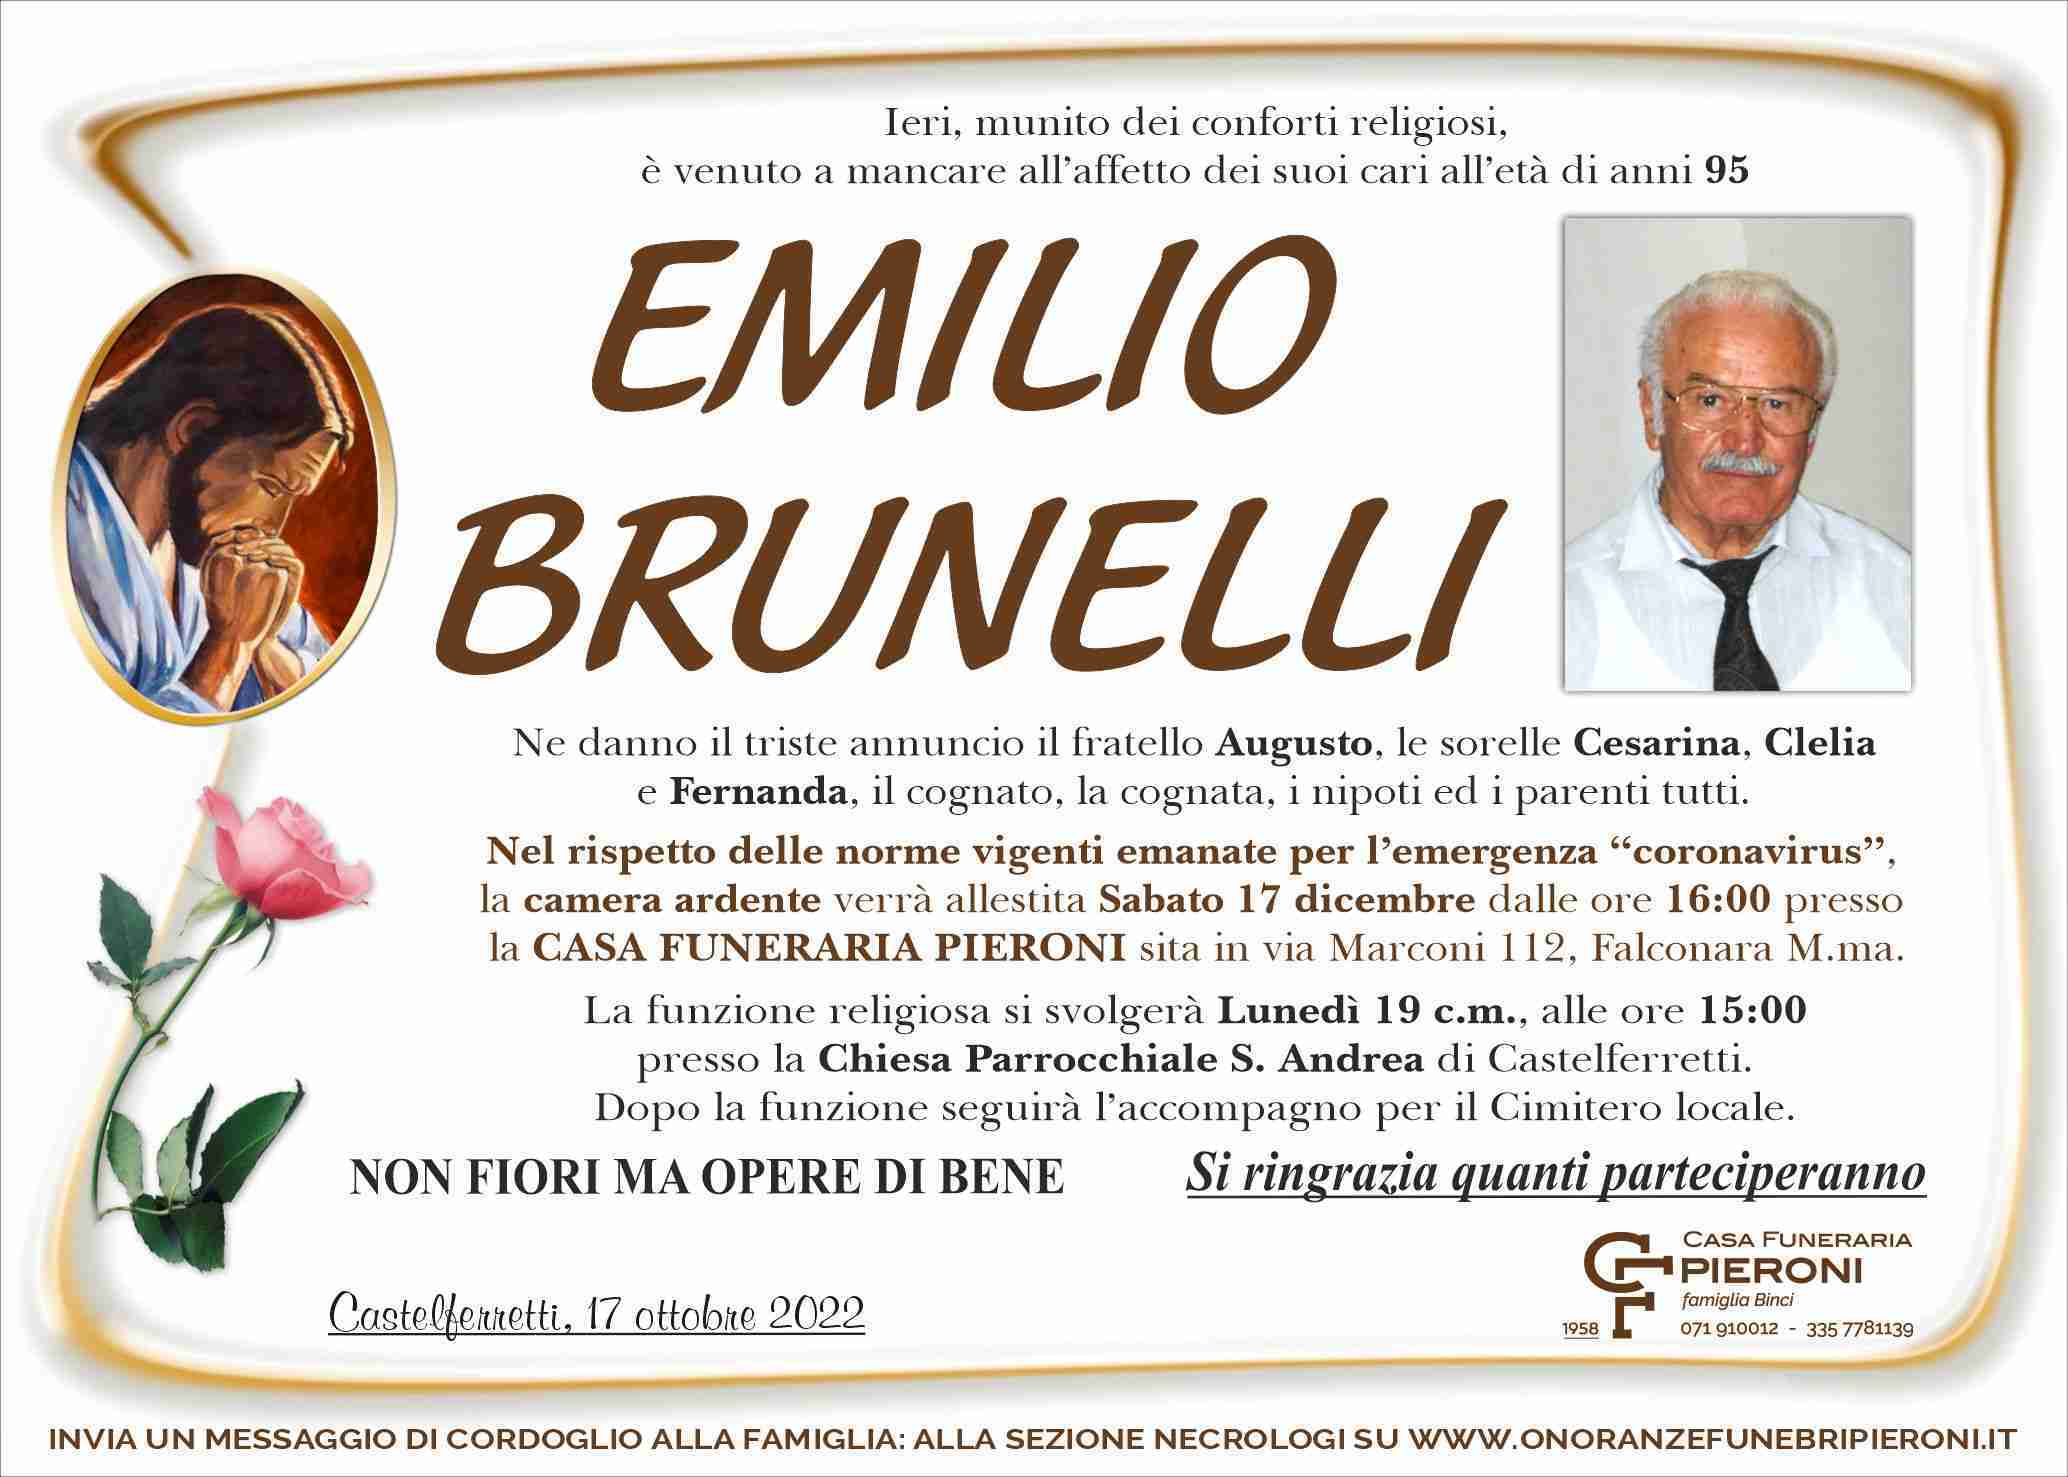 Emilio Brunelli